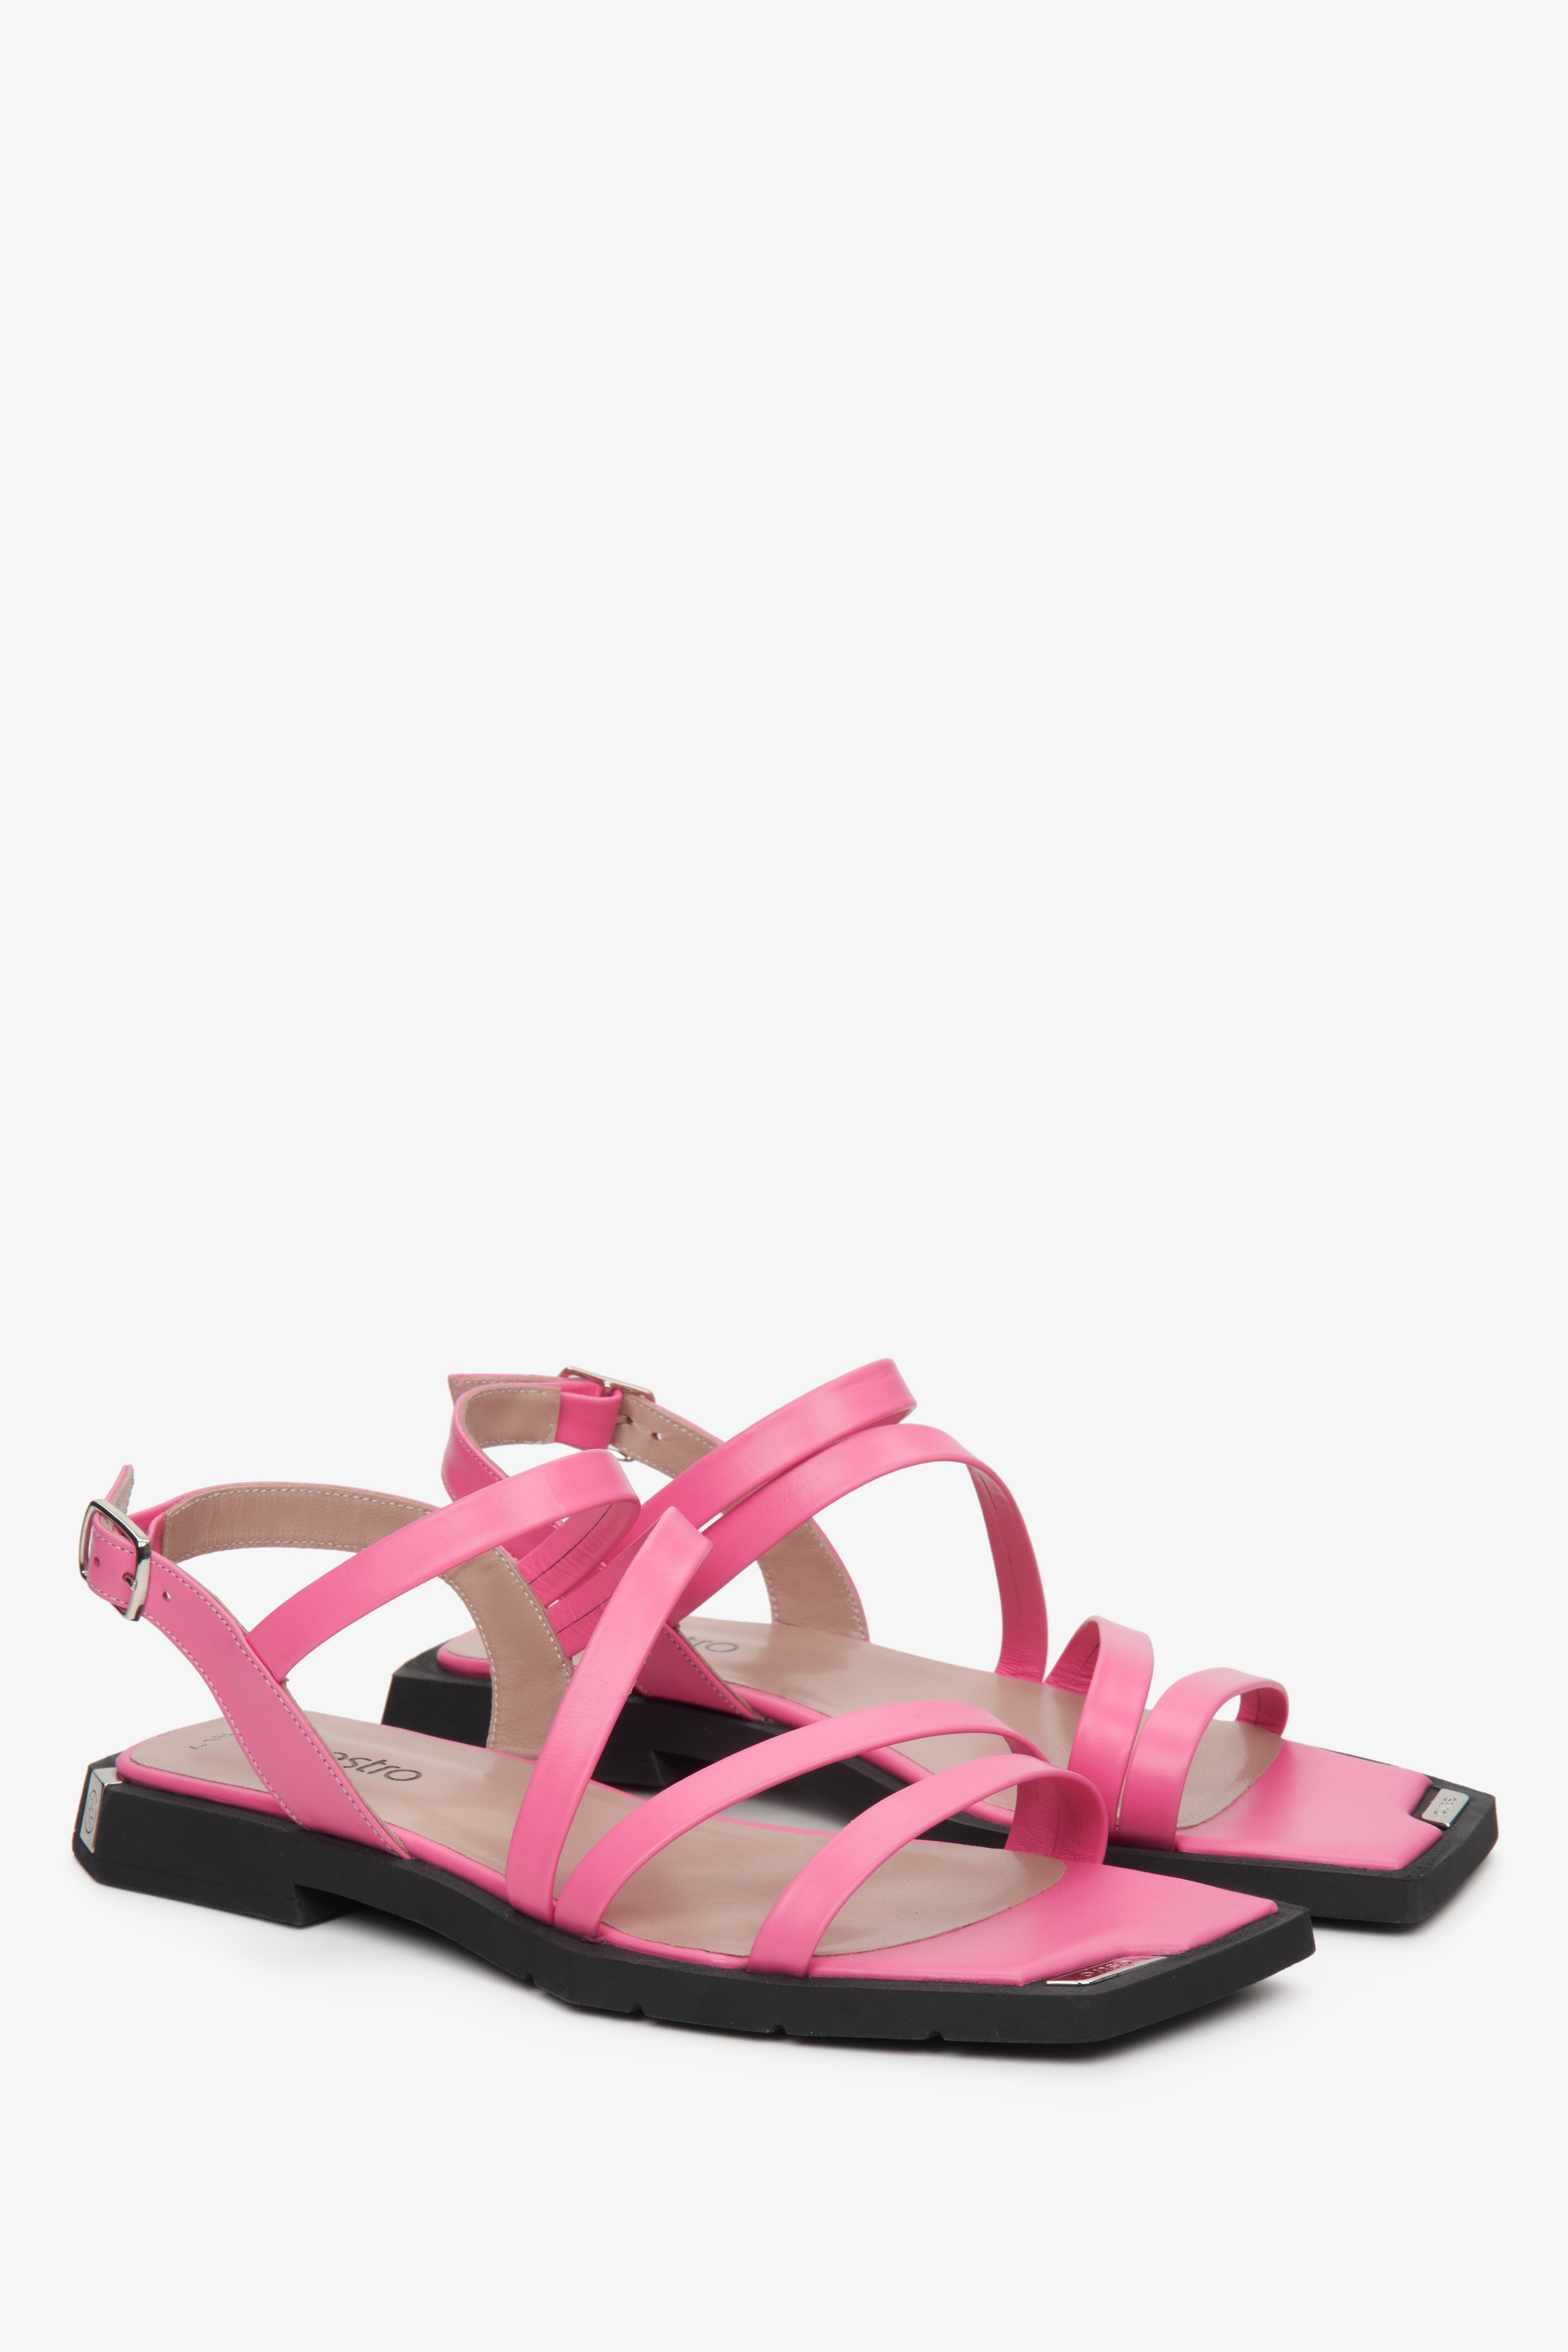 Skórzane sandały damskie Estro ze skóry naturalnej z cienkich pasków w kolorze różowym - prezentacja przodu i boku butów.